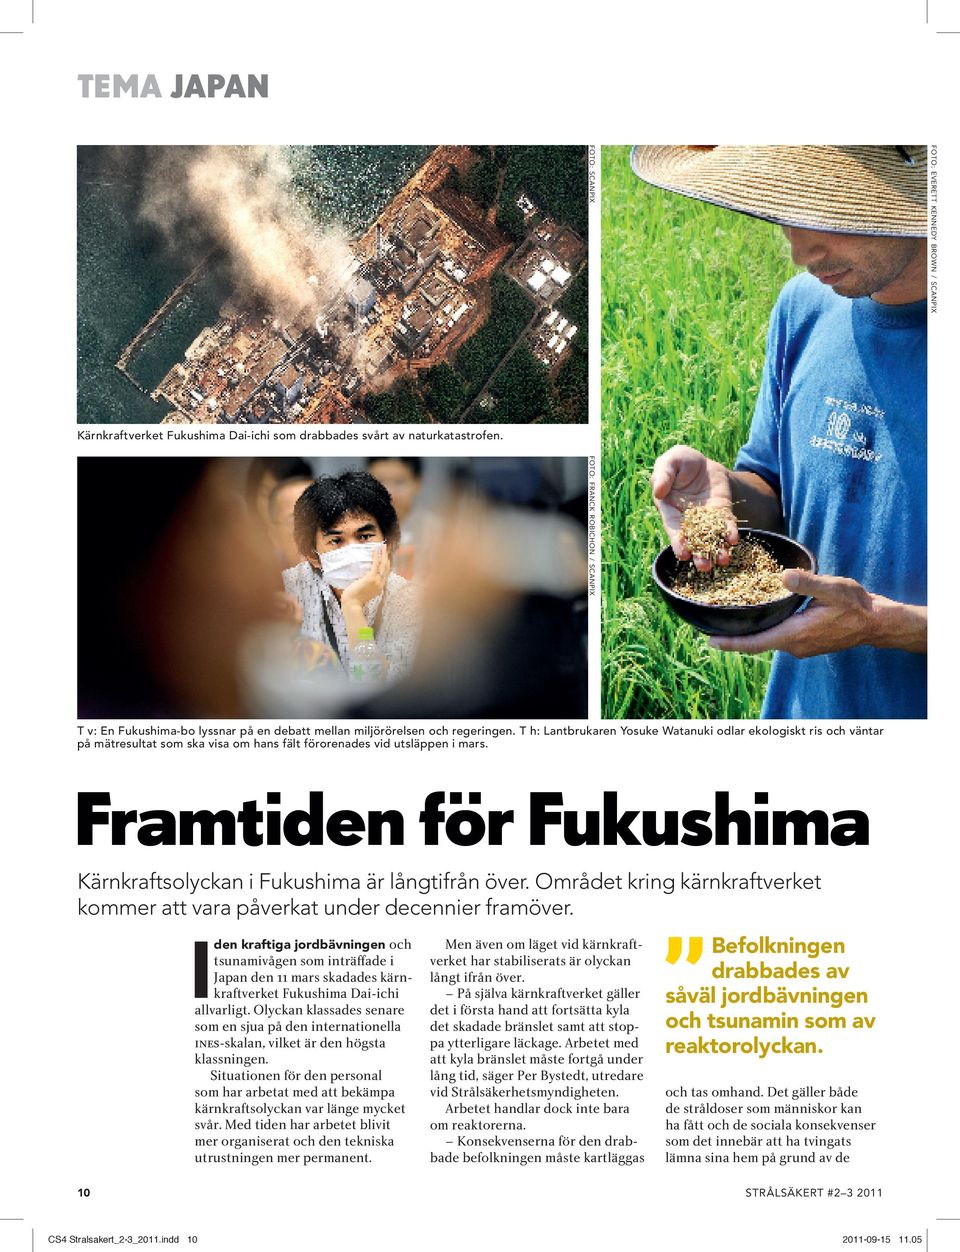 T h: Lantbrukaren Yosuke Watanuki odlar ekologiskt ris och väntar på mätresultat som ska visa om hans fält förorenades vid utsläppen i mars.